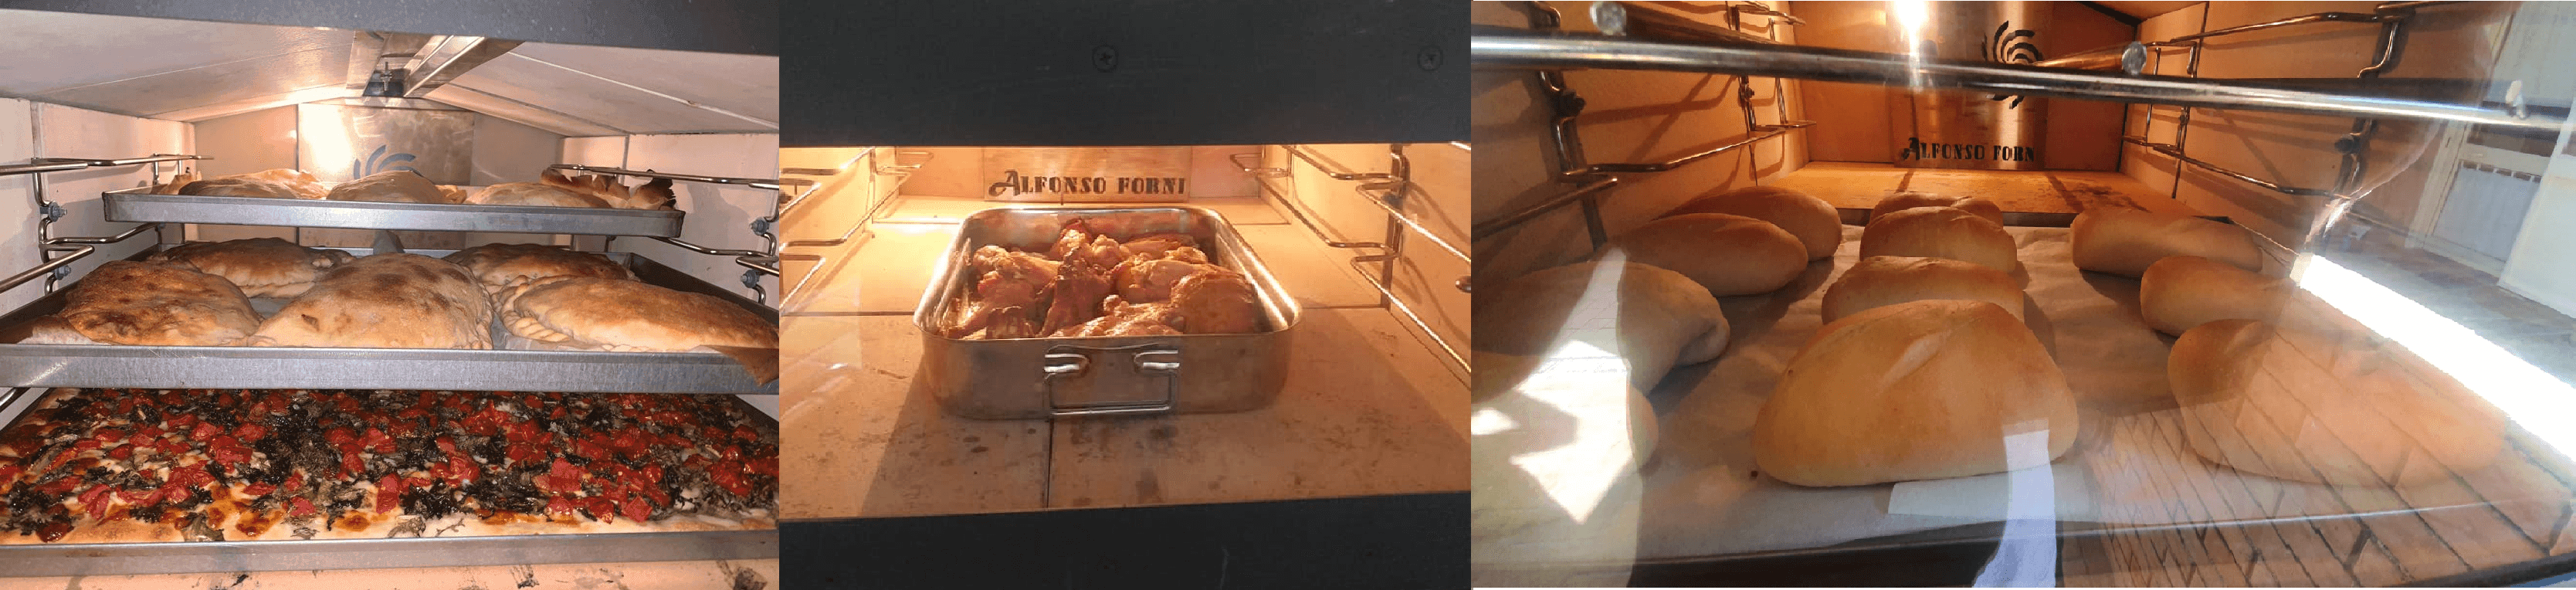 cucinare nel forno a legna Luxor V2 con girarrosto